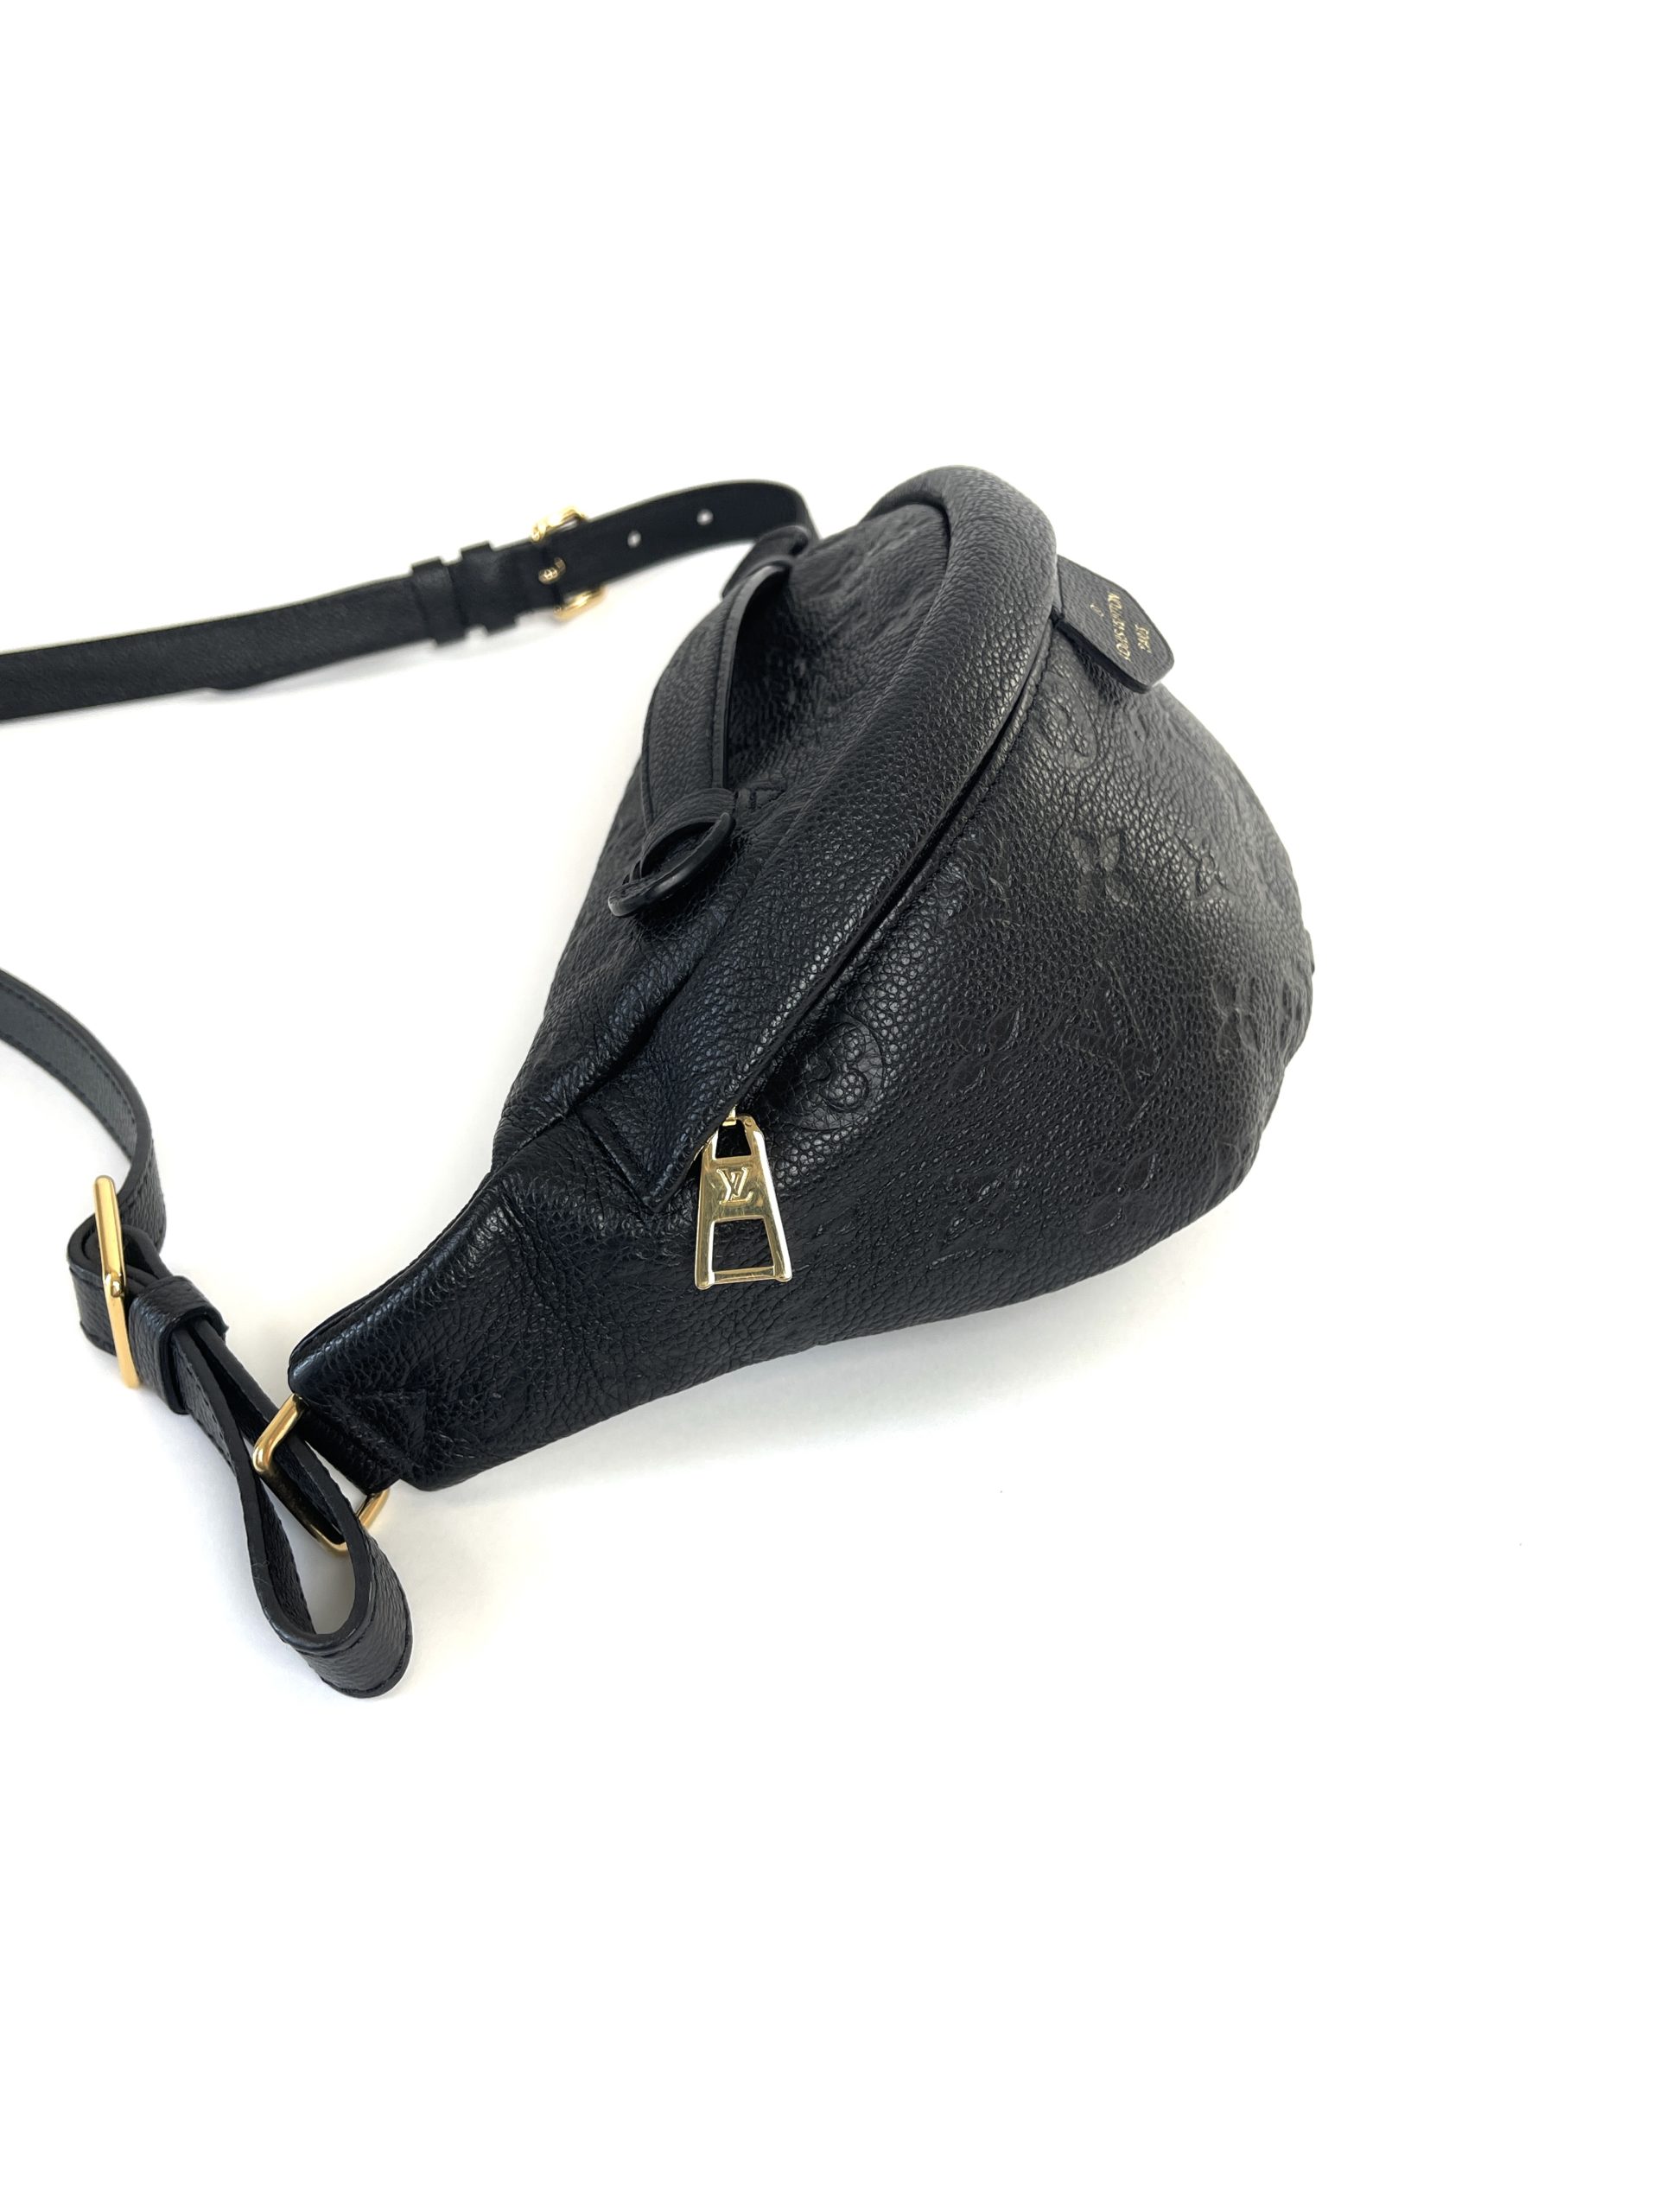 Louis Vuitton Monogram Empreinte Bum Bag Black Noir Leather – THE